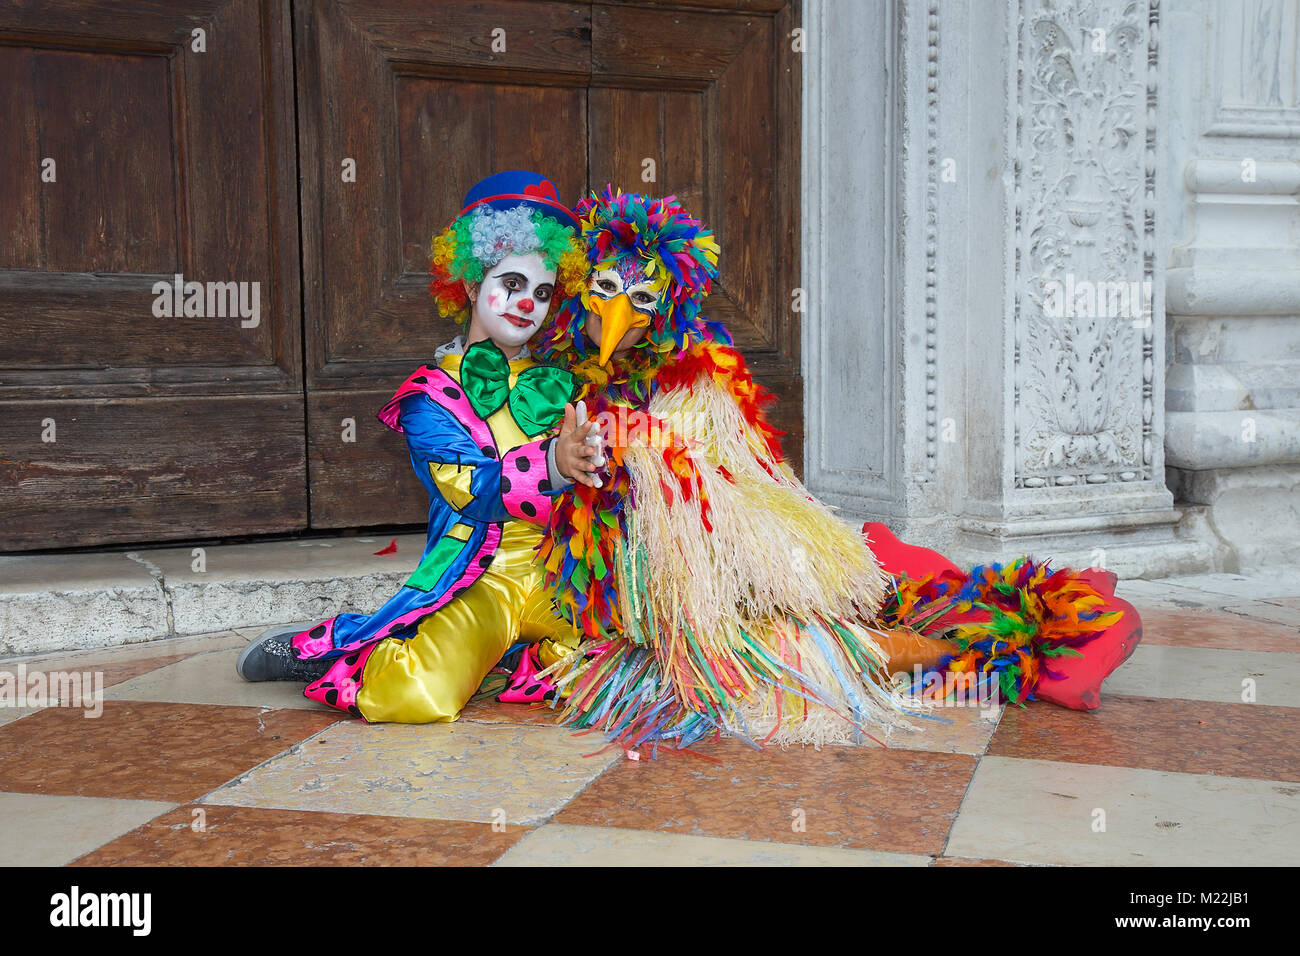 Clown maschera sul Carnevale di Venezia - Jester maschera in costume colorato su Piazza San Marco a Venezia Foto Stock